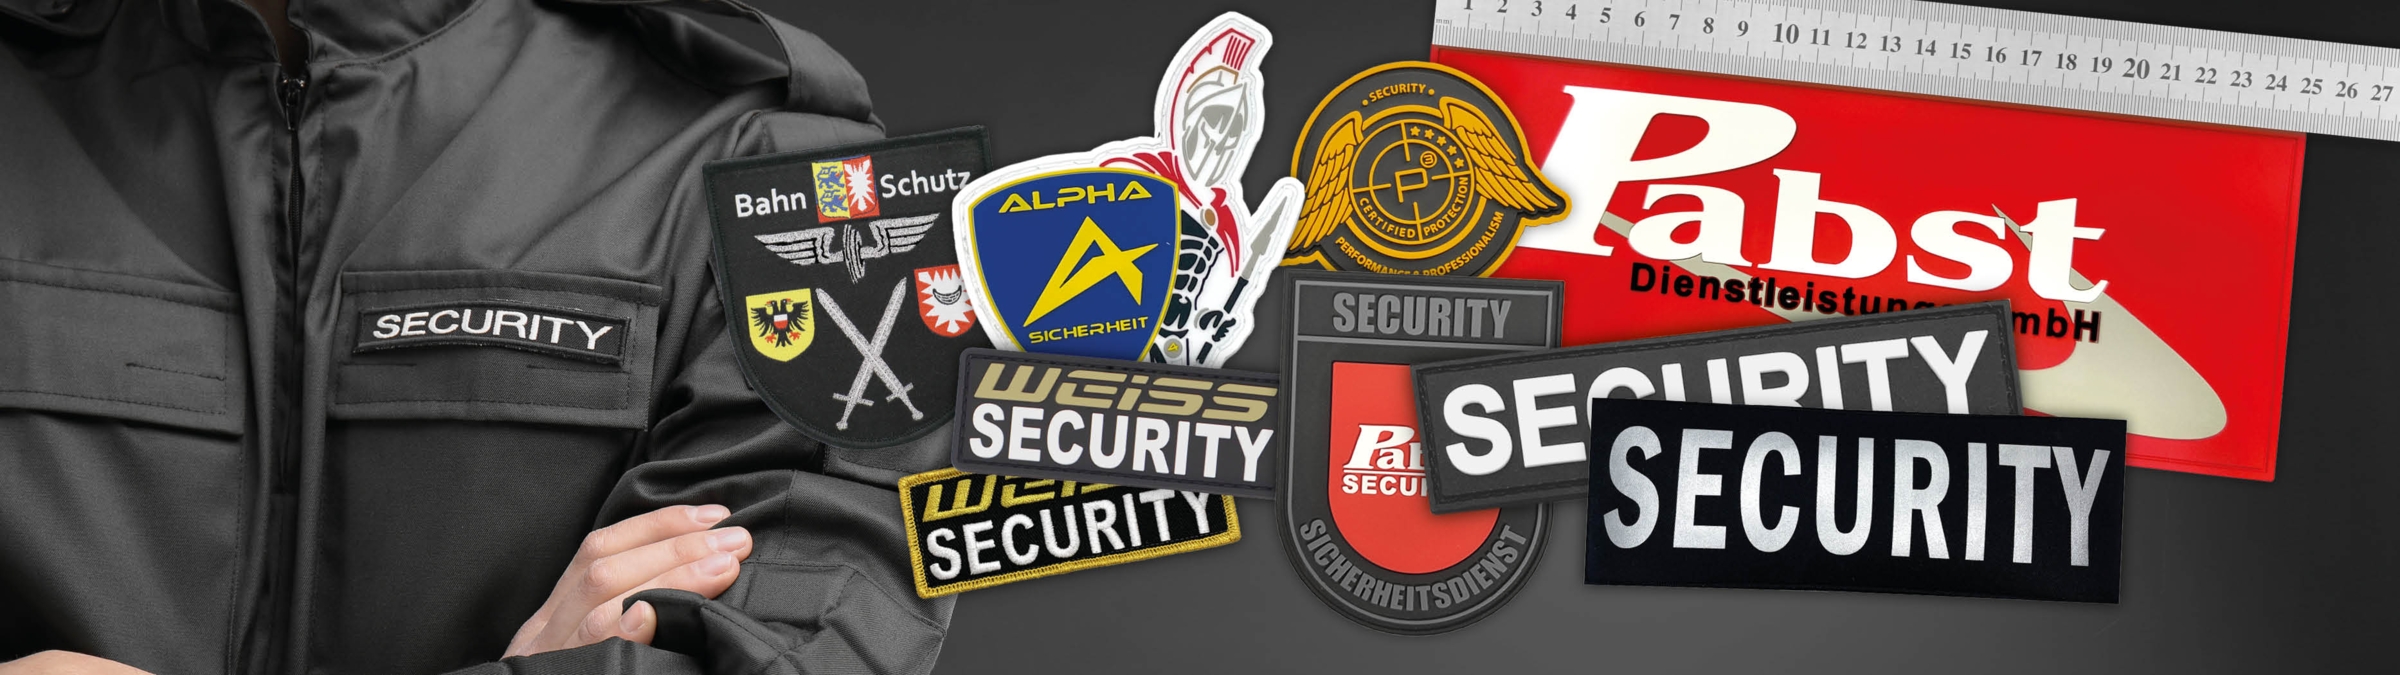 Security Abzeichen für Sicherheitsdienste kaufen